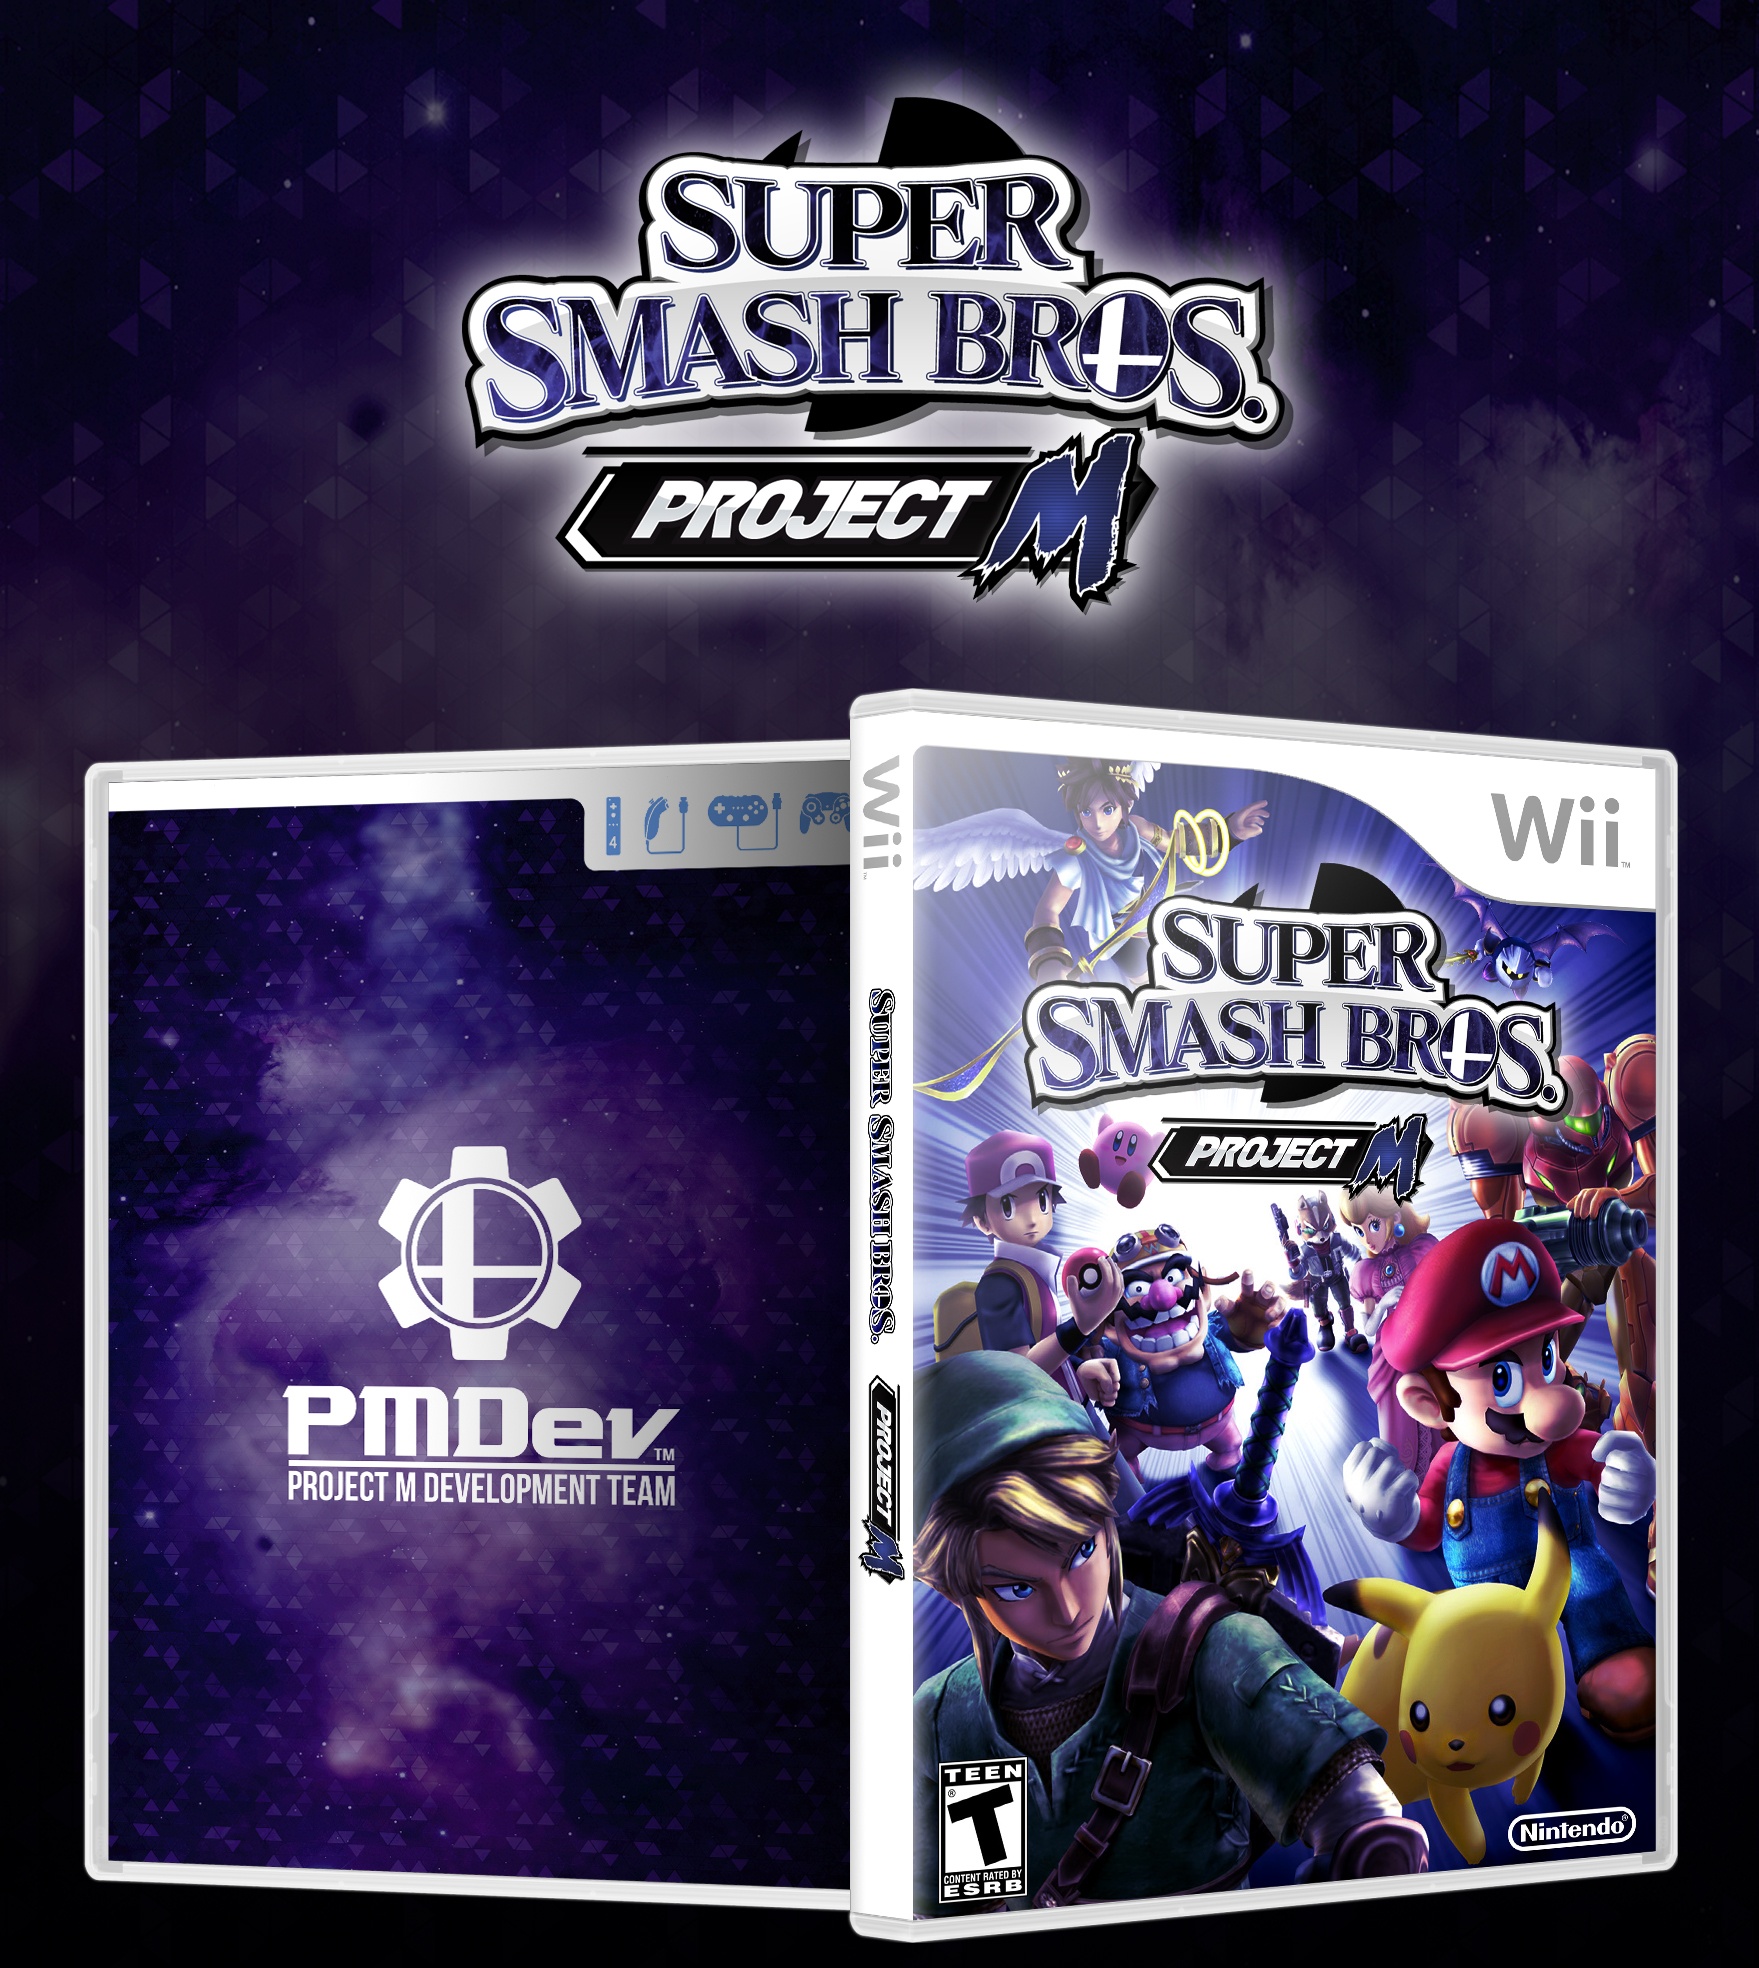 Super Smash Bros. Project M box cover